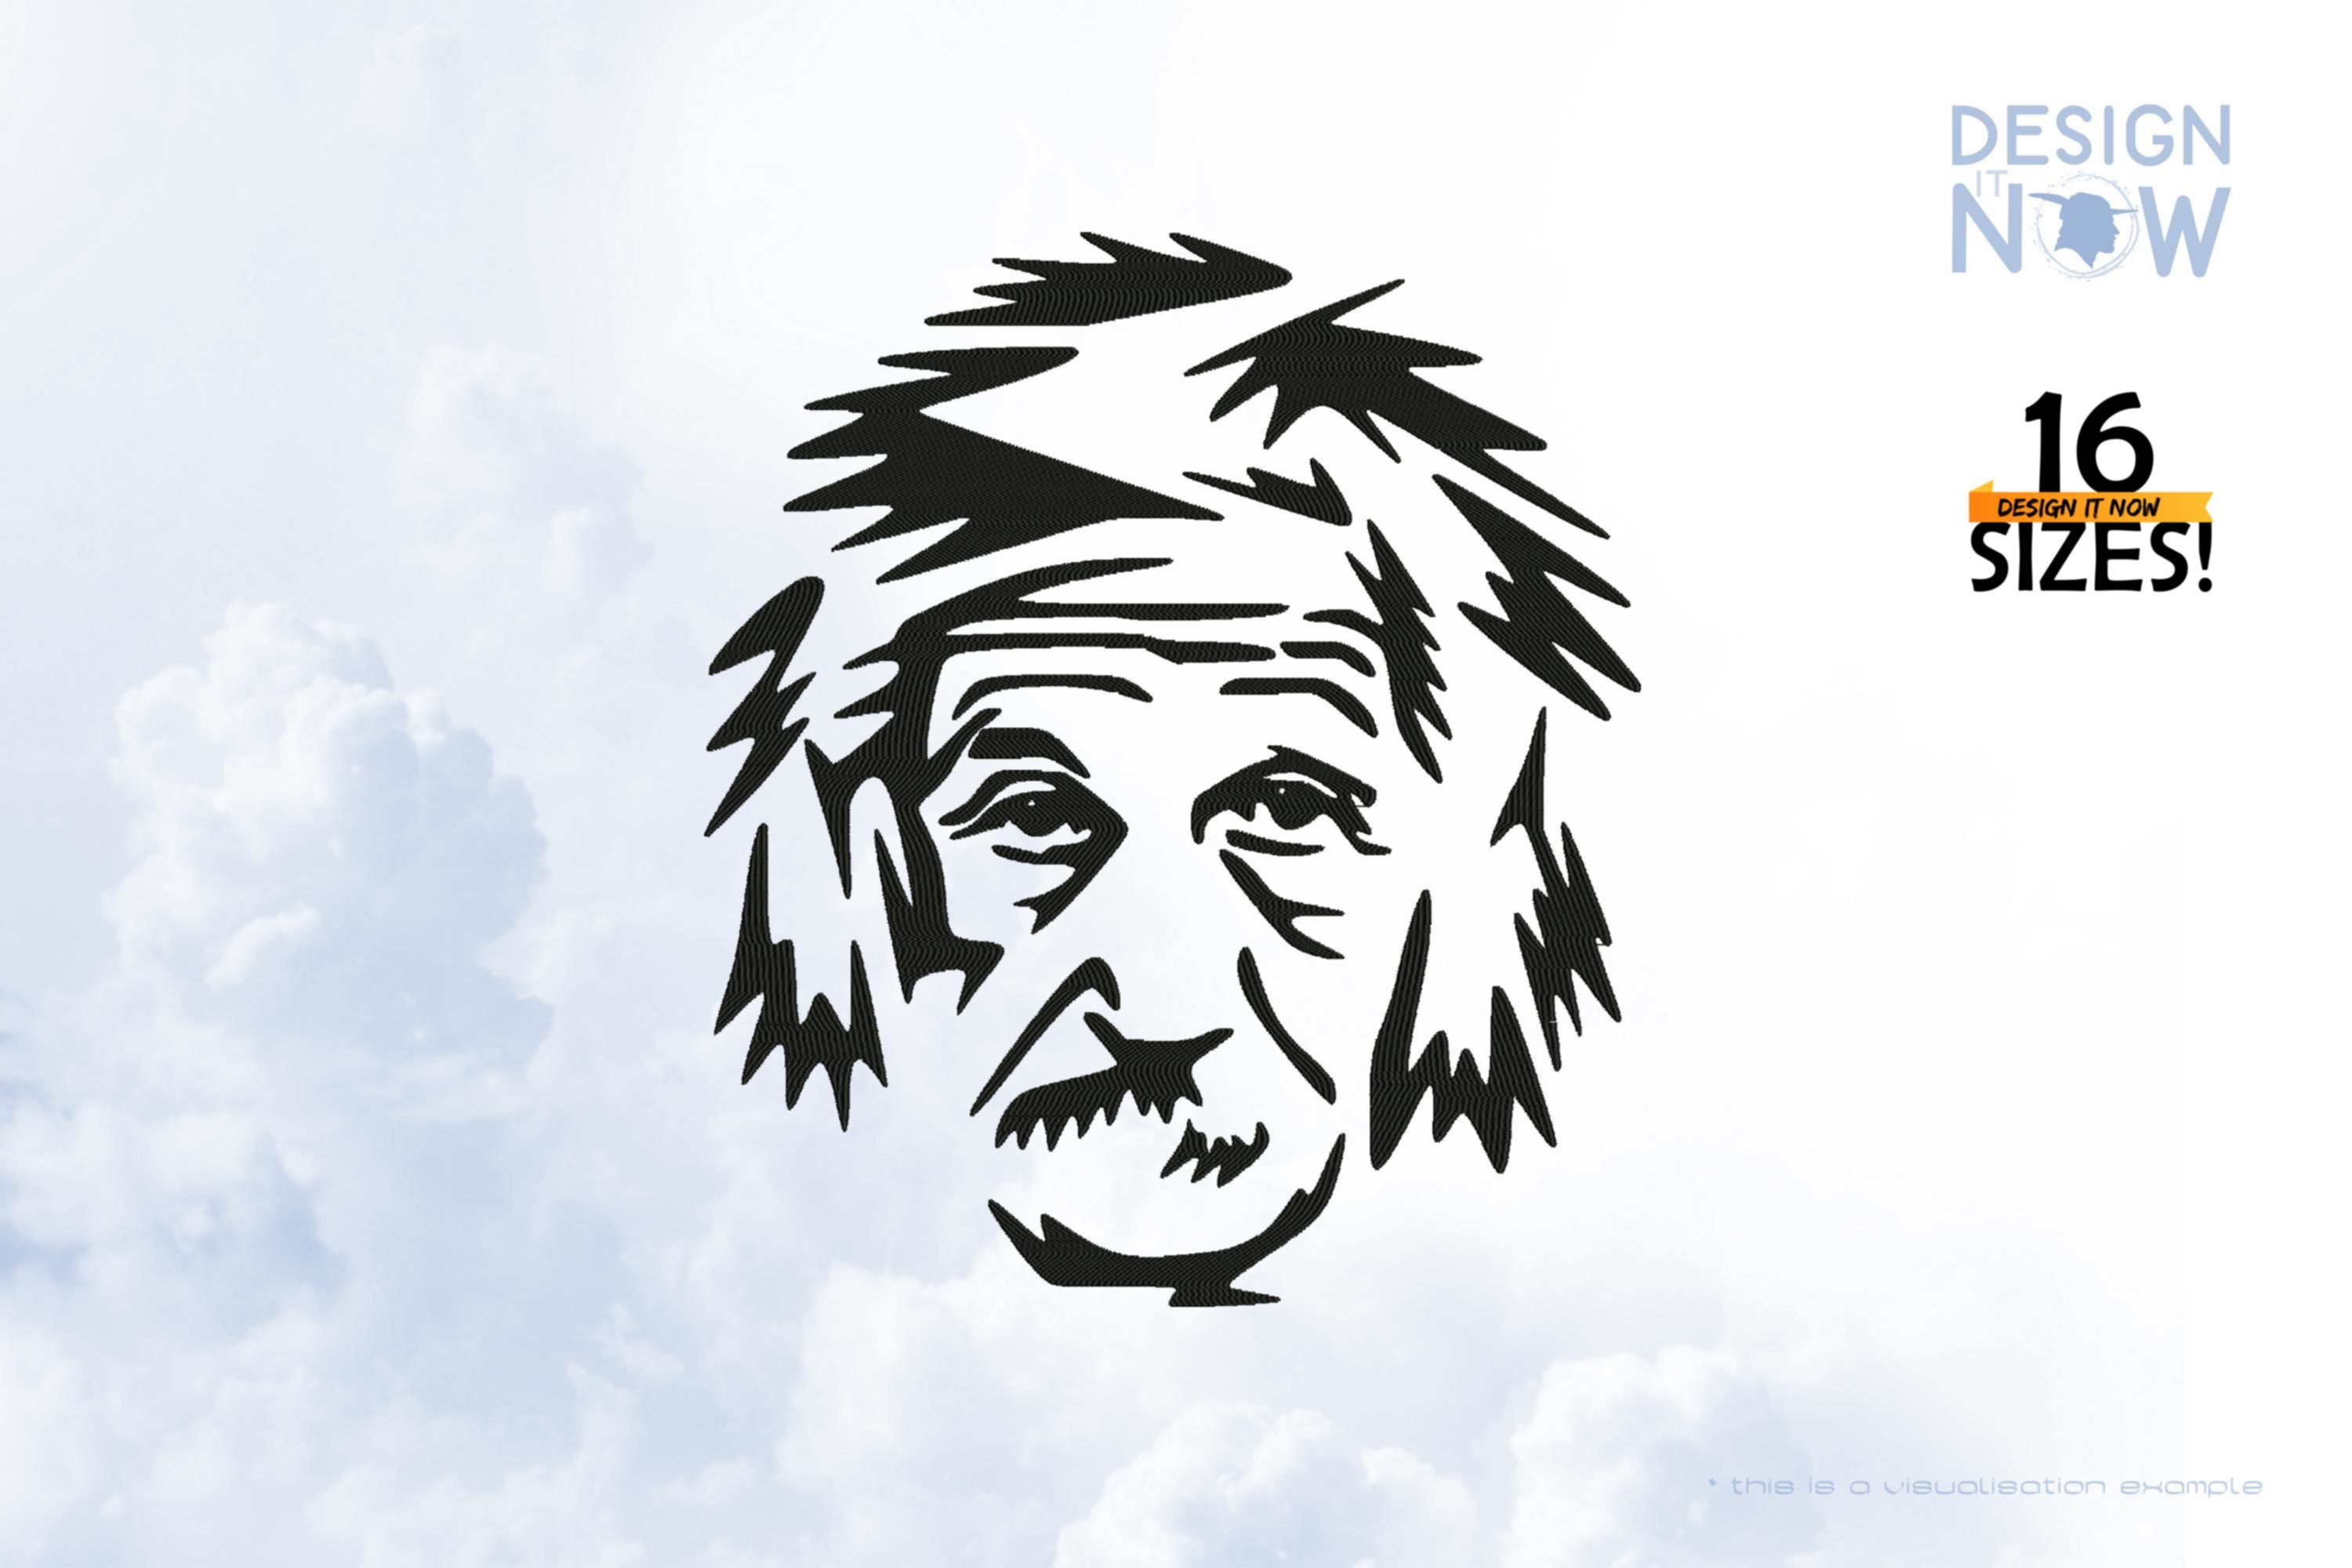 Tribute To Physicist A. Einstein aka Albert Einstein III